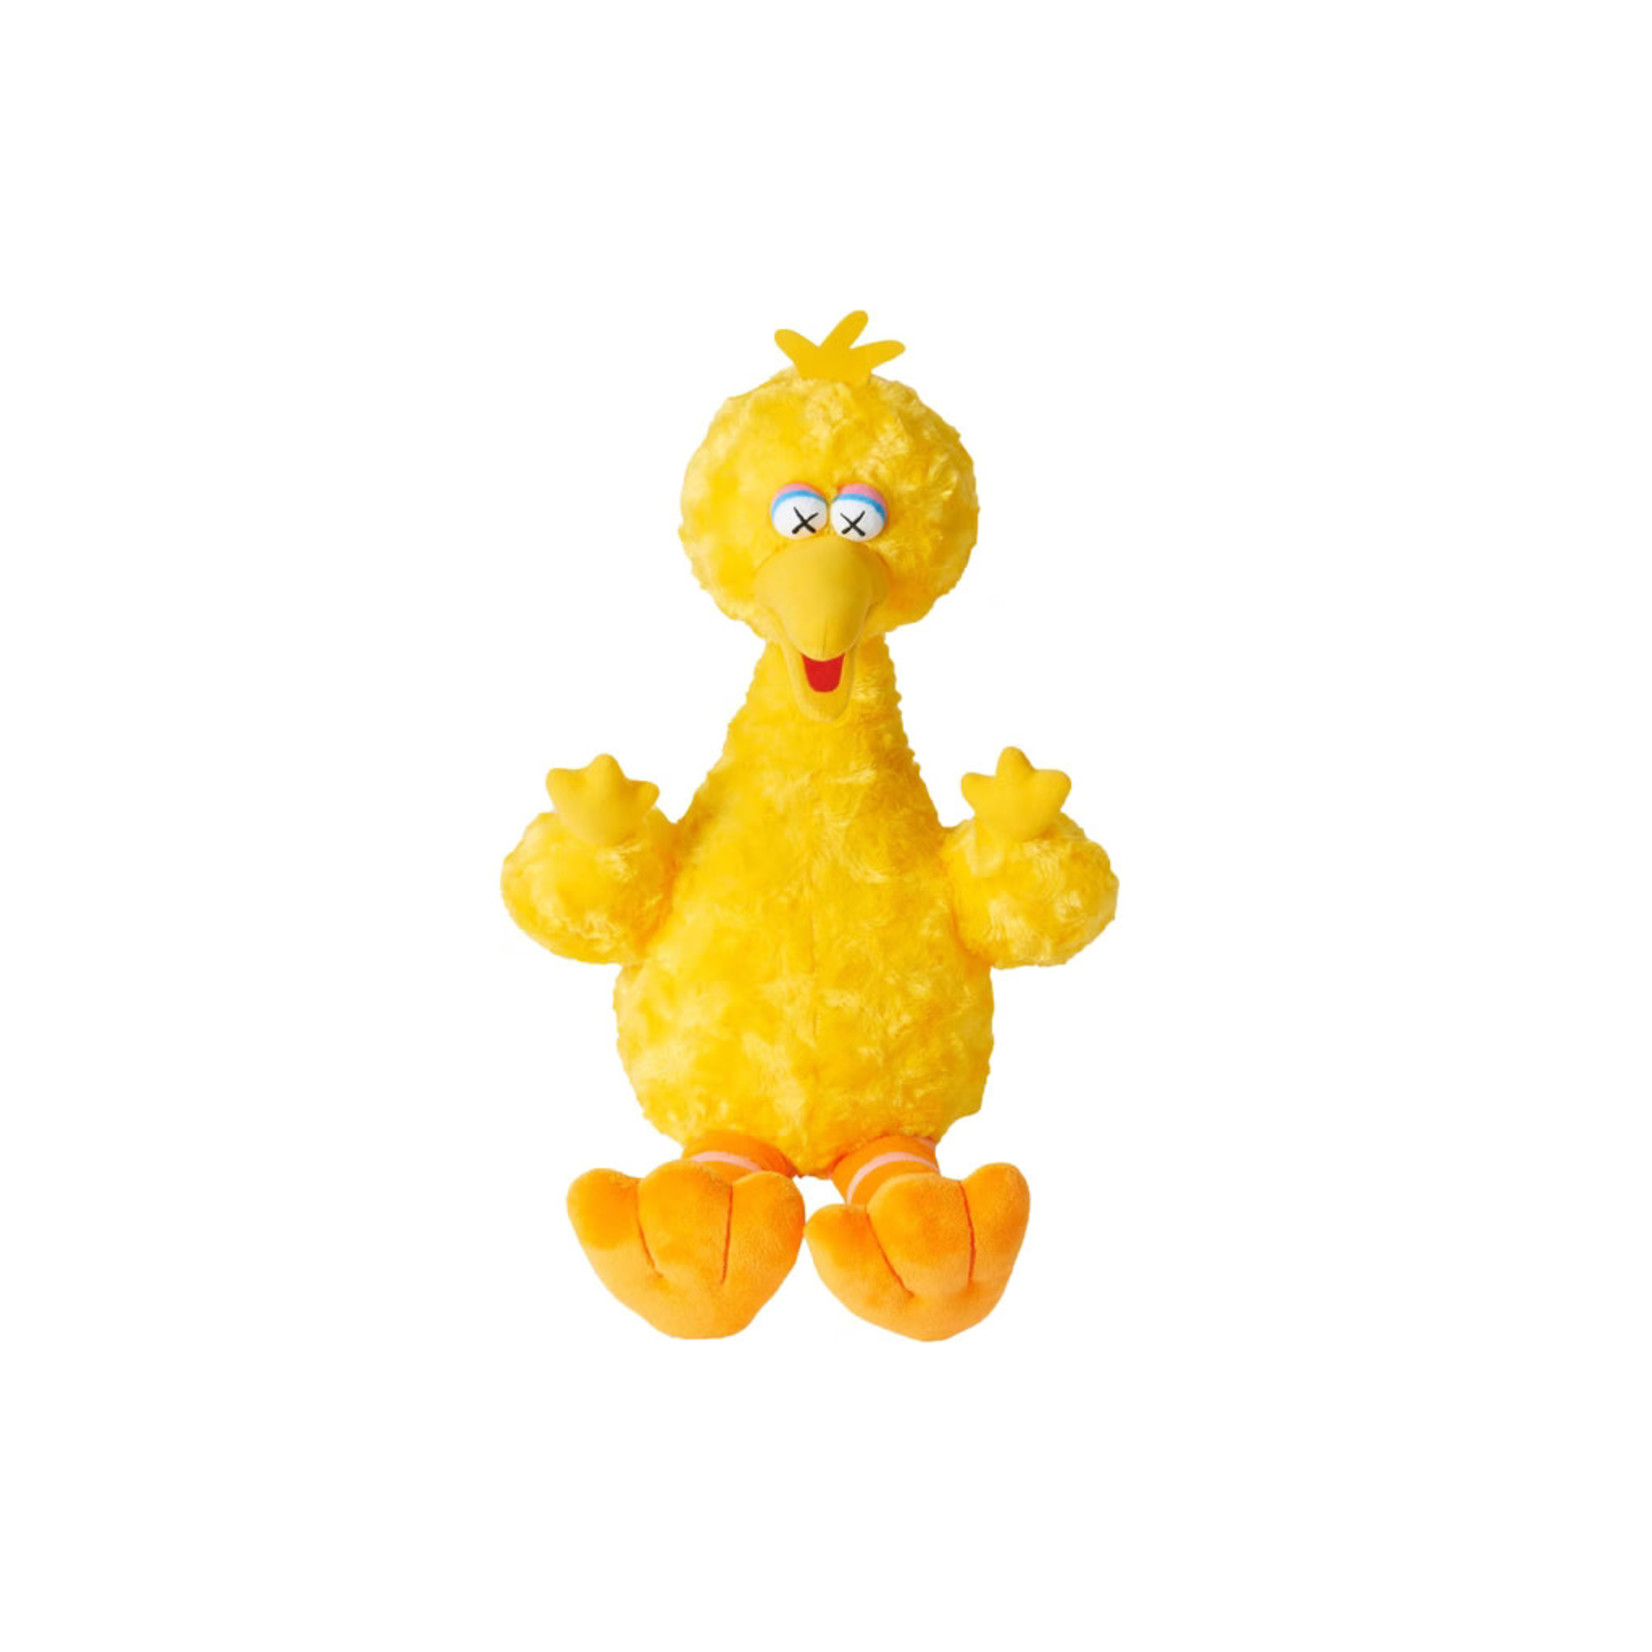 Kaws KAWS Sesame Street Uniqlo Big Bird Plush Toy Yellow